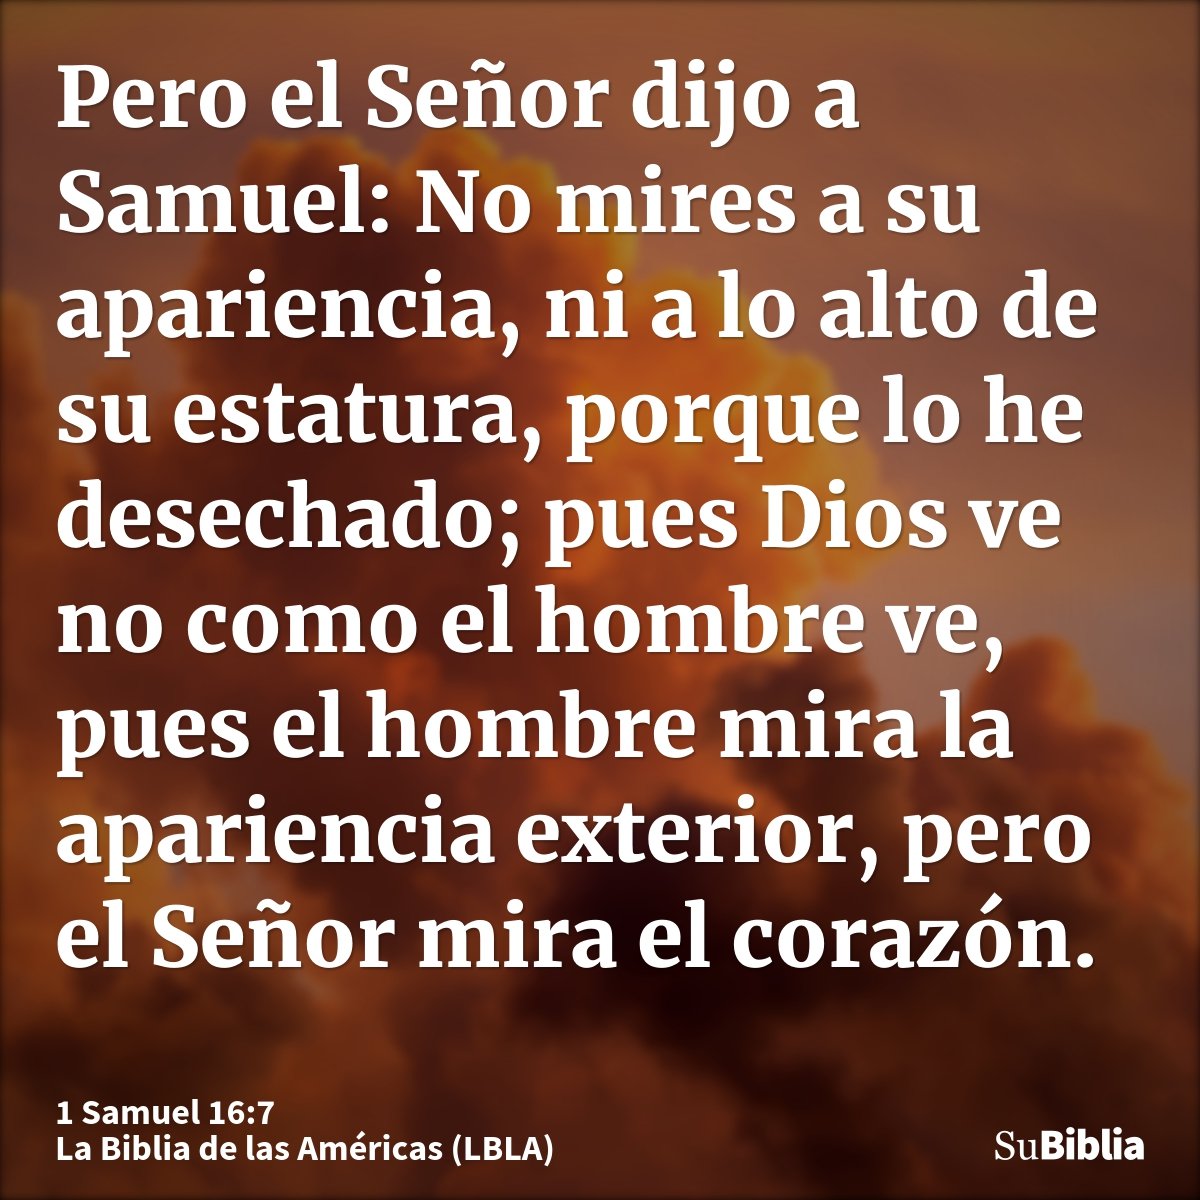 Pero el Señor dijo a Samuel: No mires a su apariencia, ni a lo alto de su estatura, porque lo he desechado; pues Dios ve no como el hombre ve, pues el hombre mi...